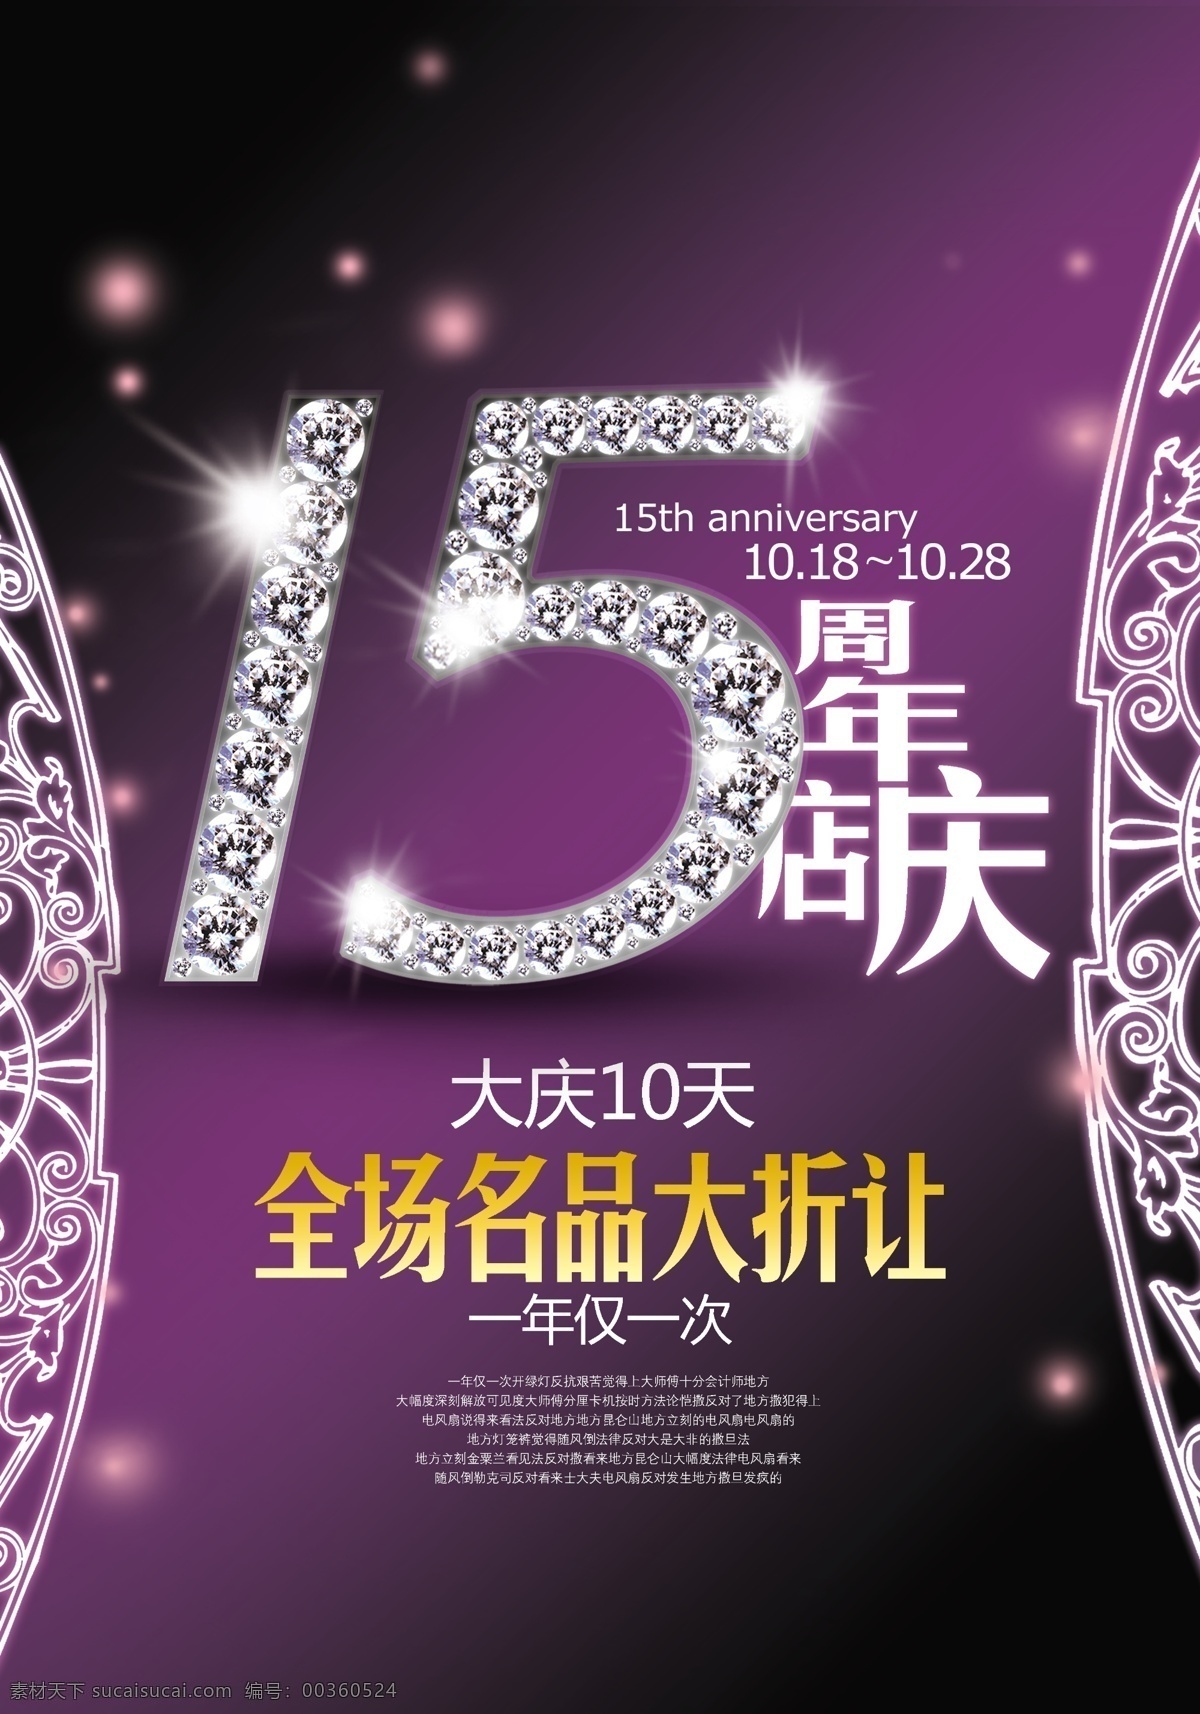 年 周年 店 庆 宣传单 大折让 钻石 紫色 神秘 浪漫 海报 dm